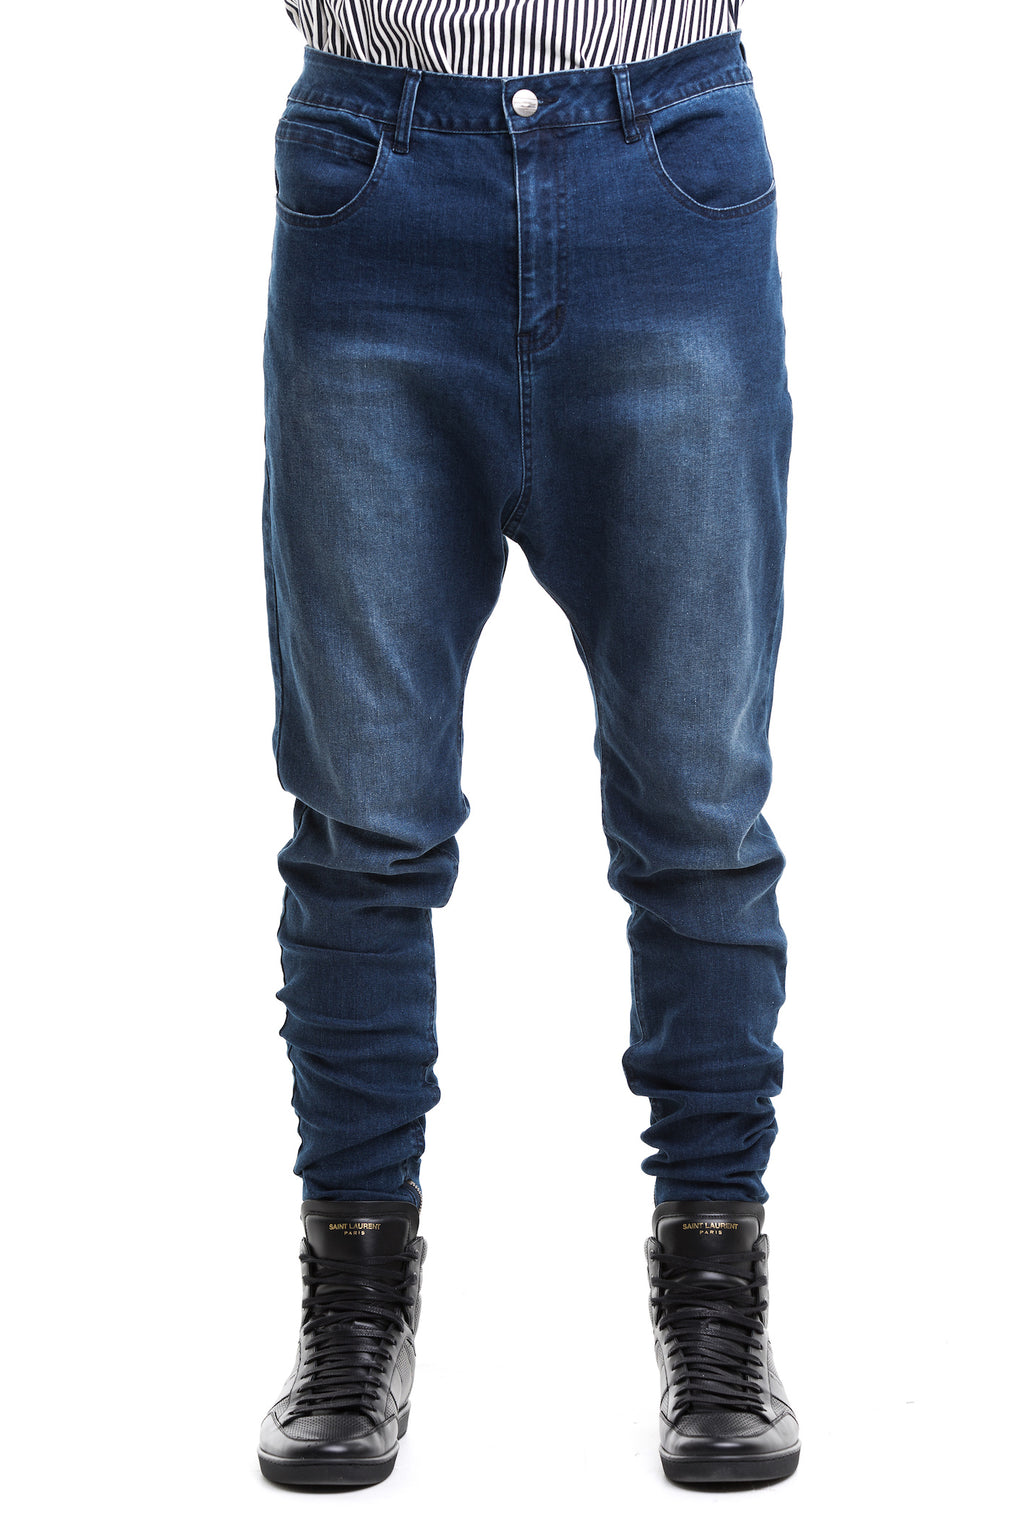 Blue 12OZ Jeans -  Thick Denim